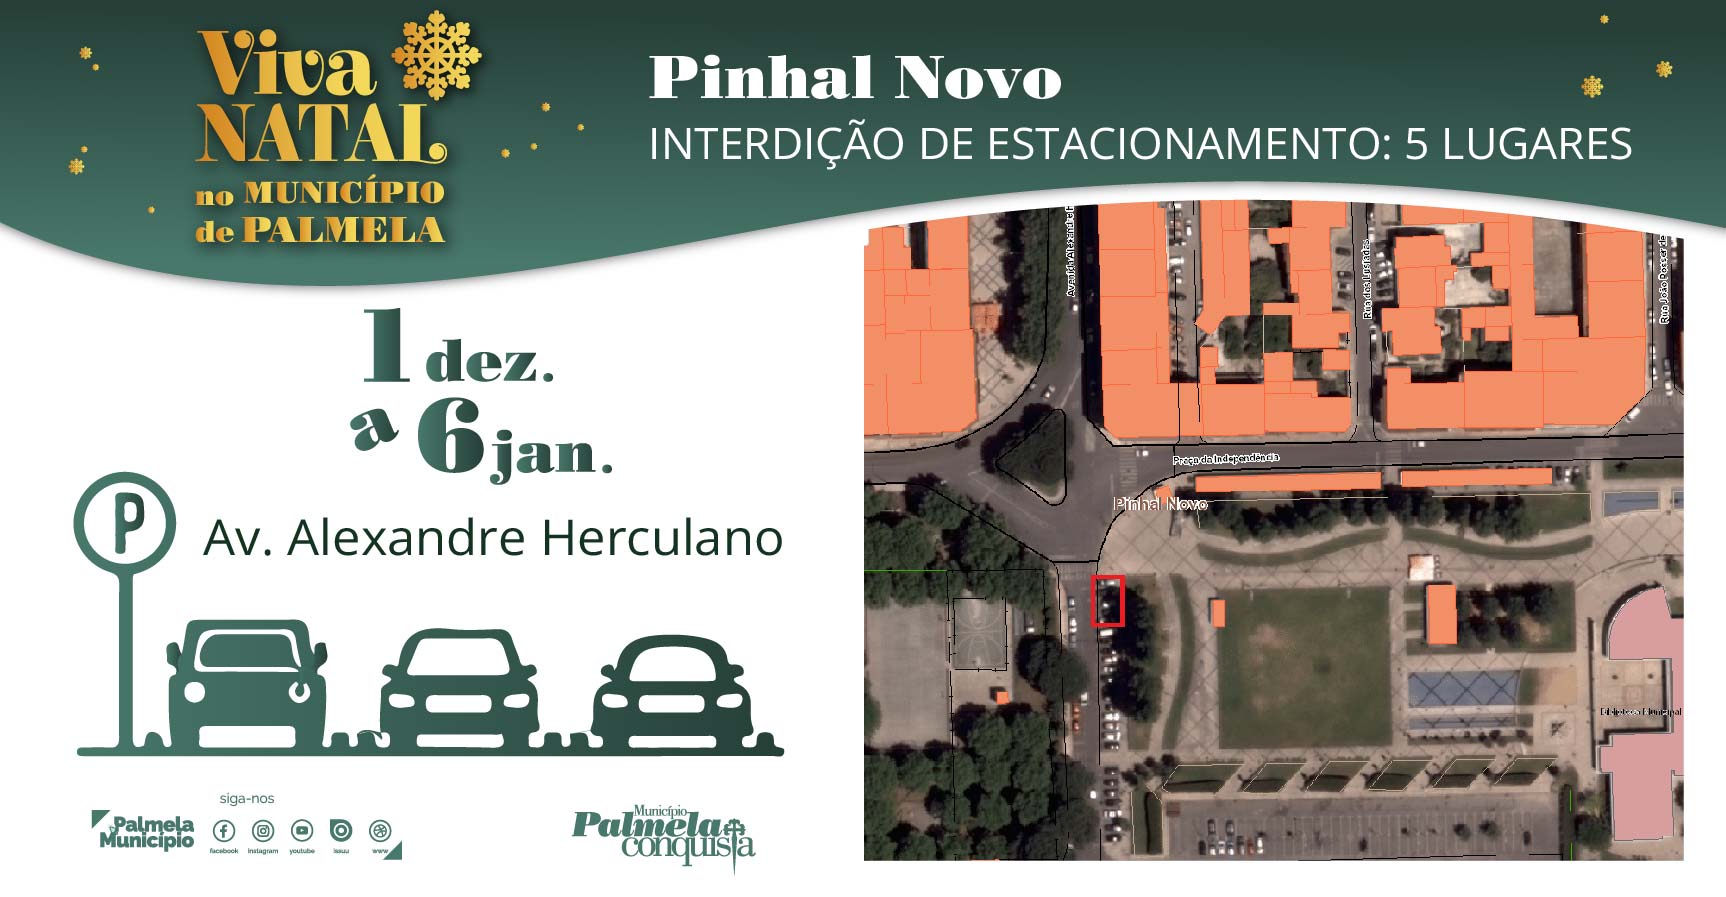 “Viva o Natal” Pinhal Novo: interdição de estacionamento para 5 lugares